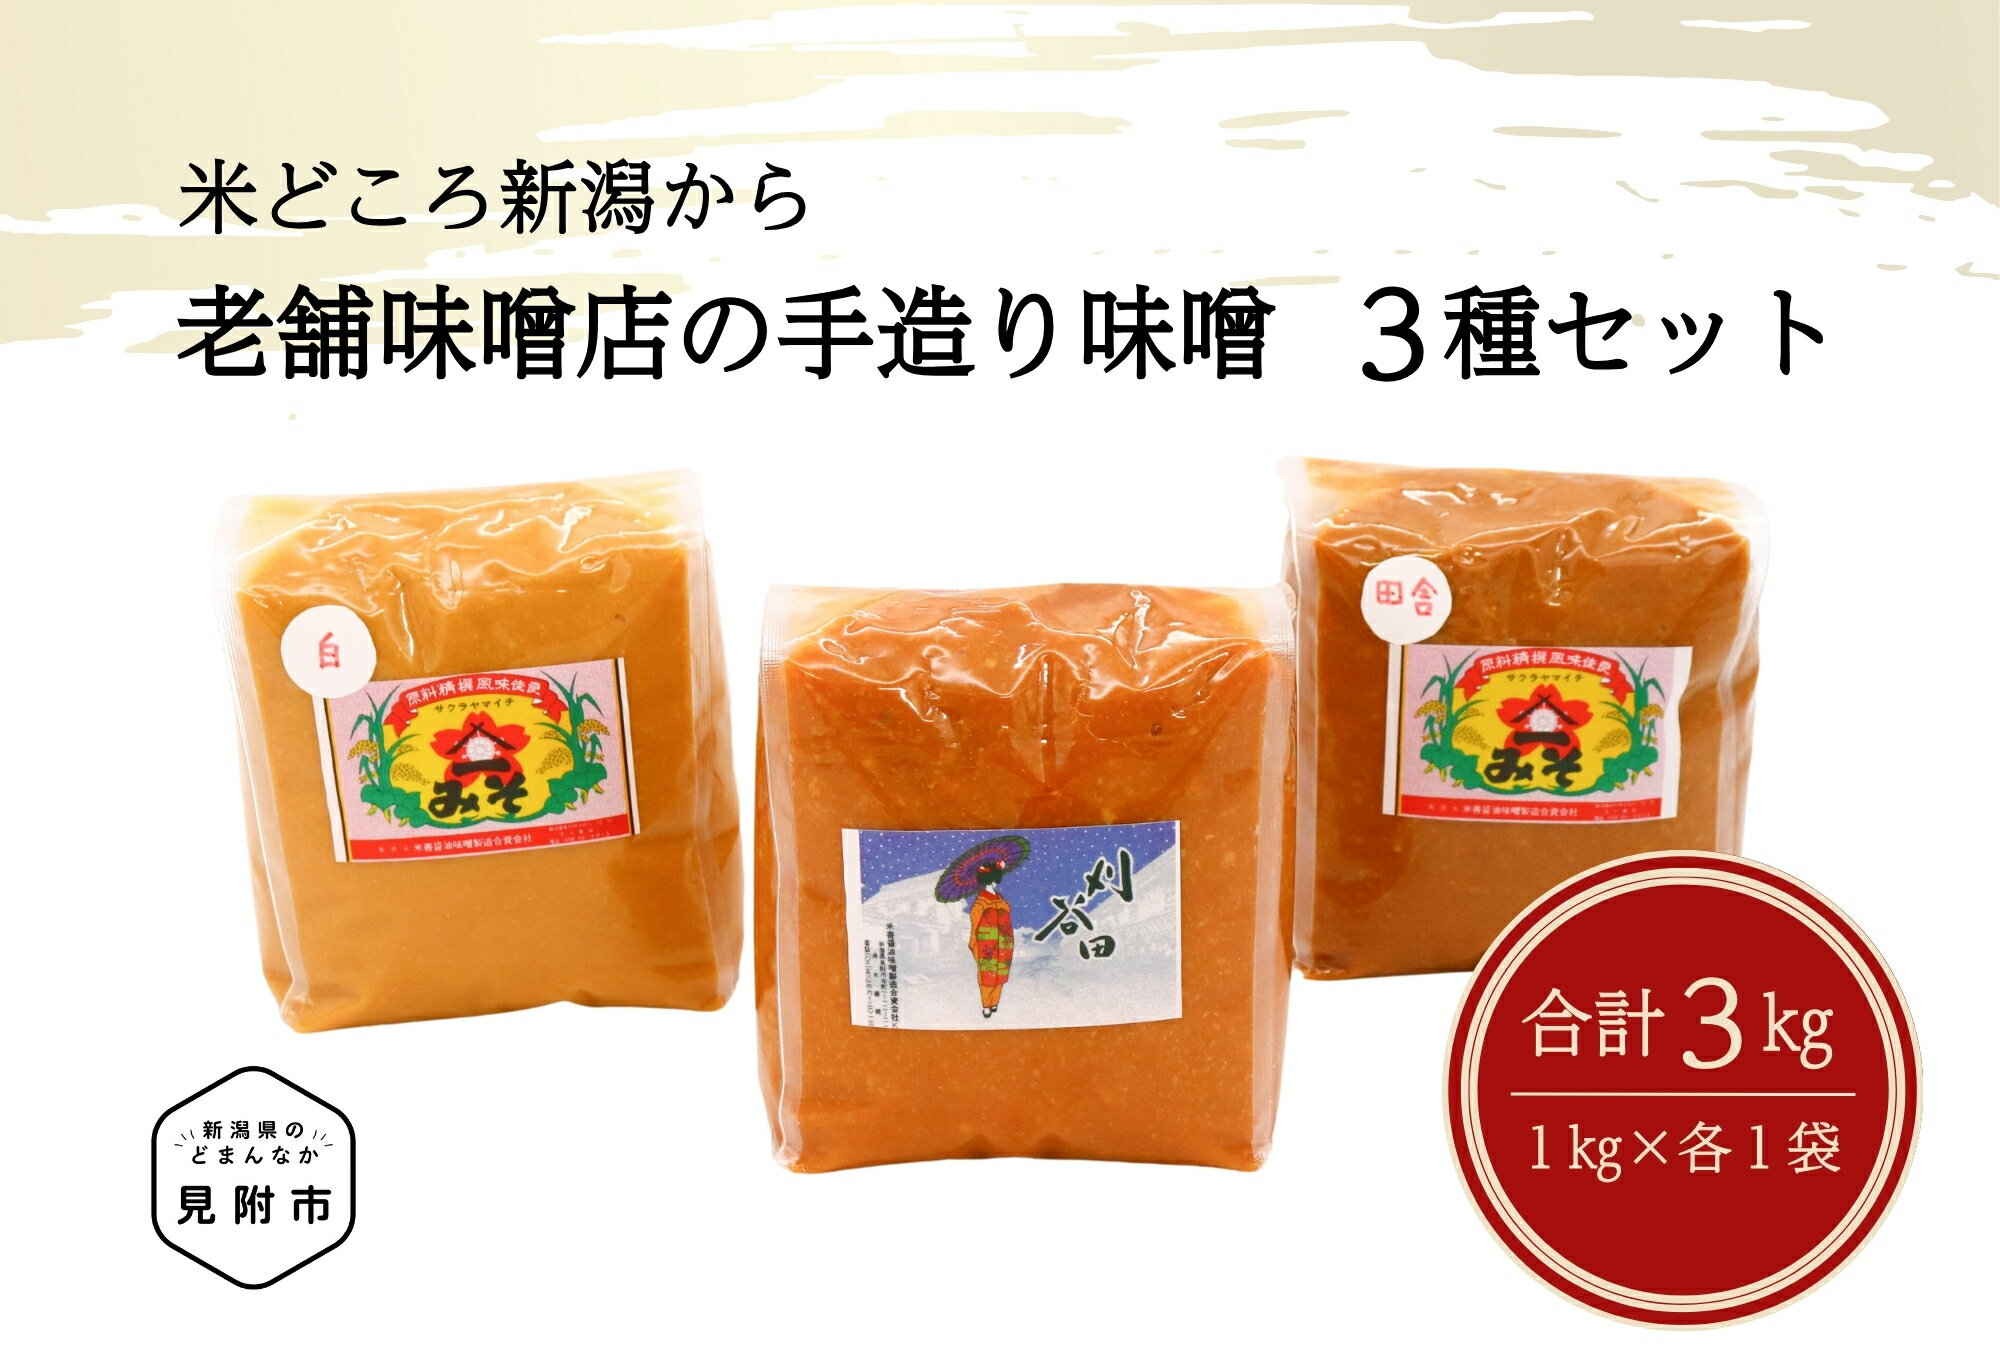 老舗味噌店の手造り味噌3種(1kg×3種)セット 伝統の味 こだわりの製法 新潟県 見附市 送料無料